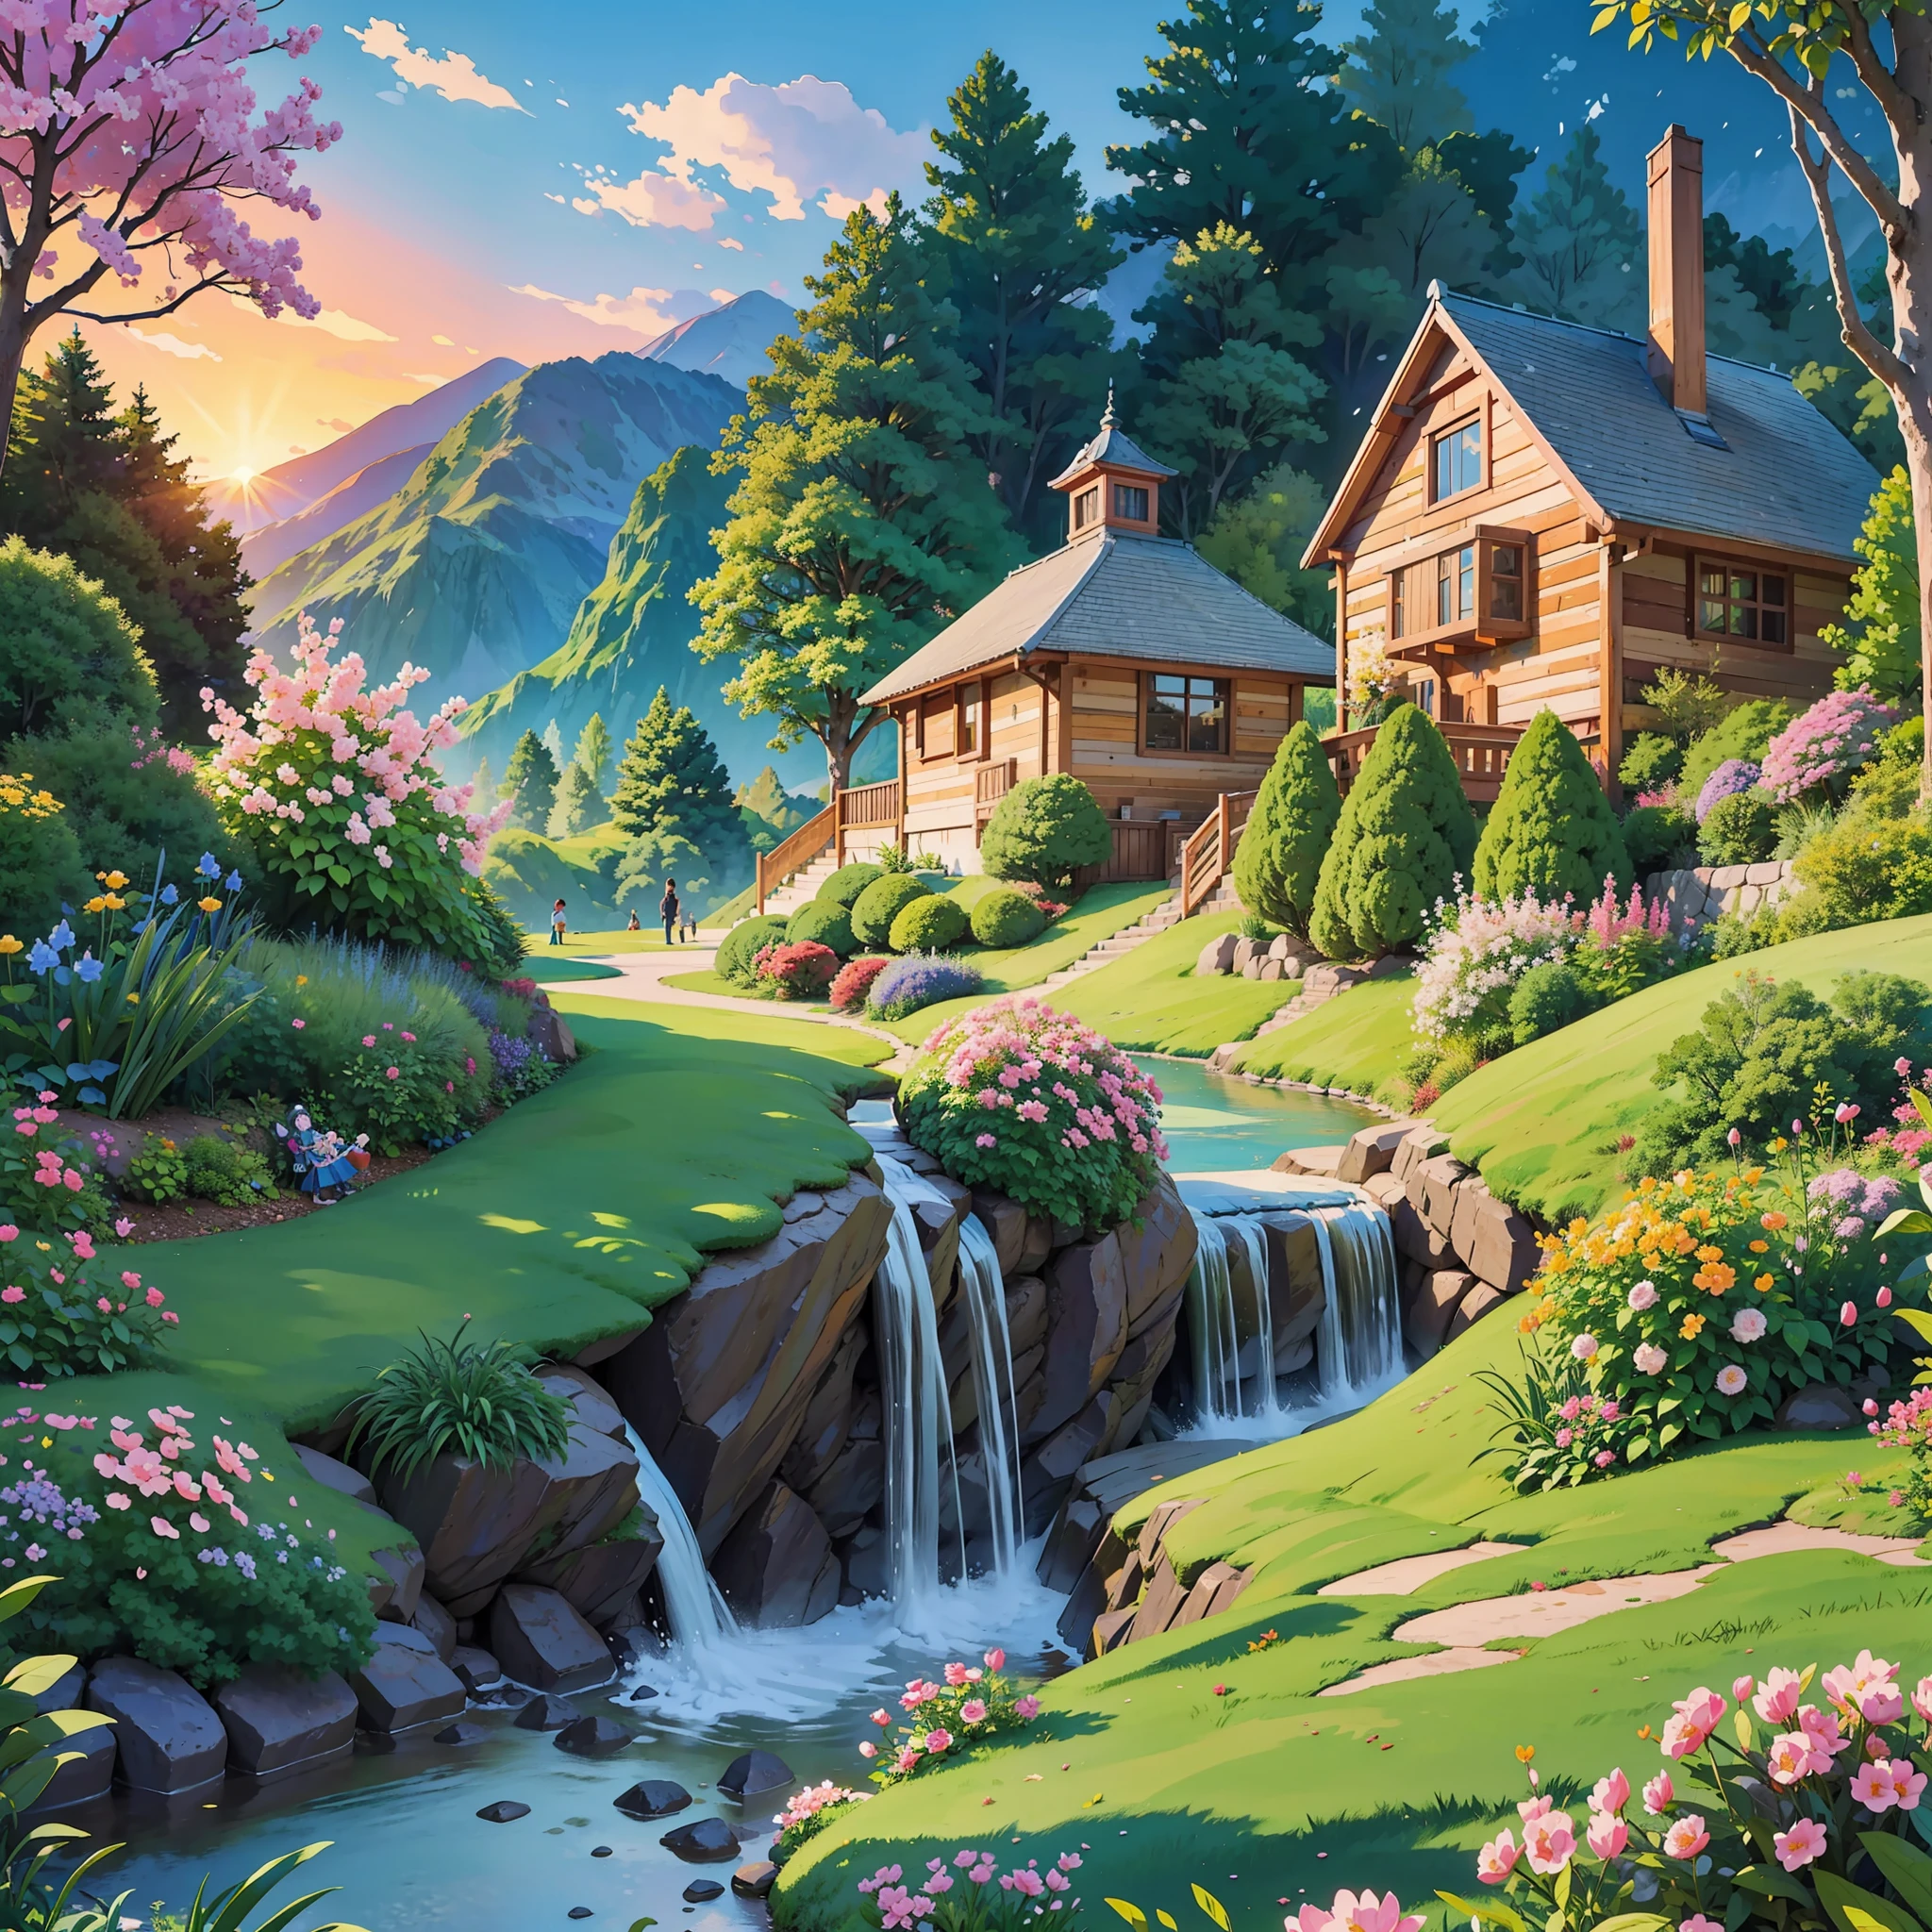 Ilustración de viviendas de montaña., cascadas en el patio trasero, Un hermoso sendero de ladrillos conduce a un hermoso jardín de flores., Los niños juegan al atardecer soleado en un hermoso jardín de hierba, nieves increíbles, los pájaros dibujan los cielos